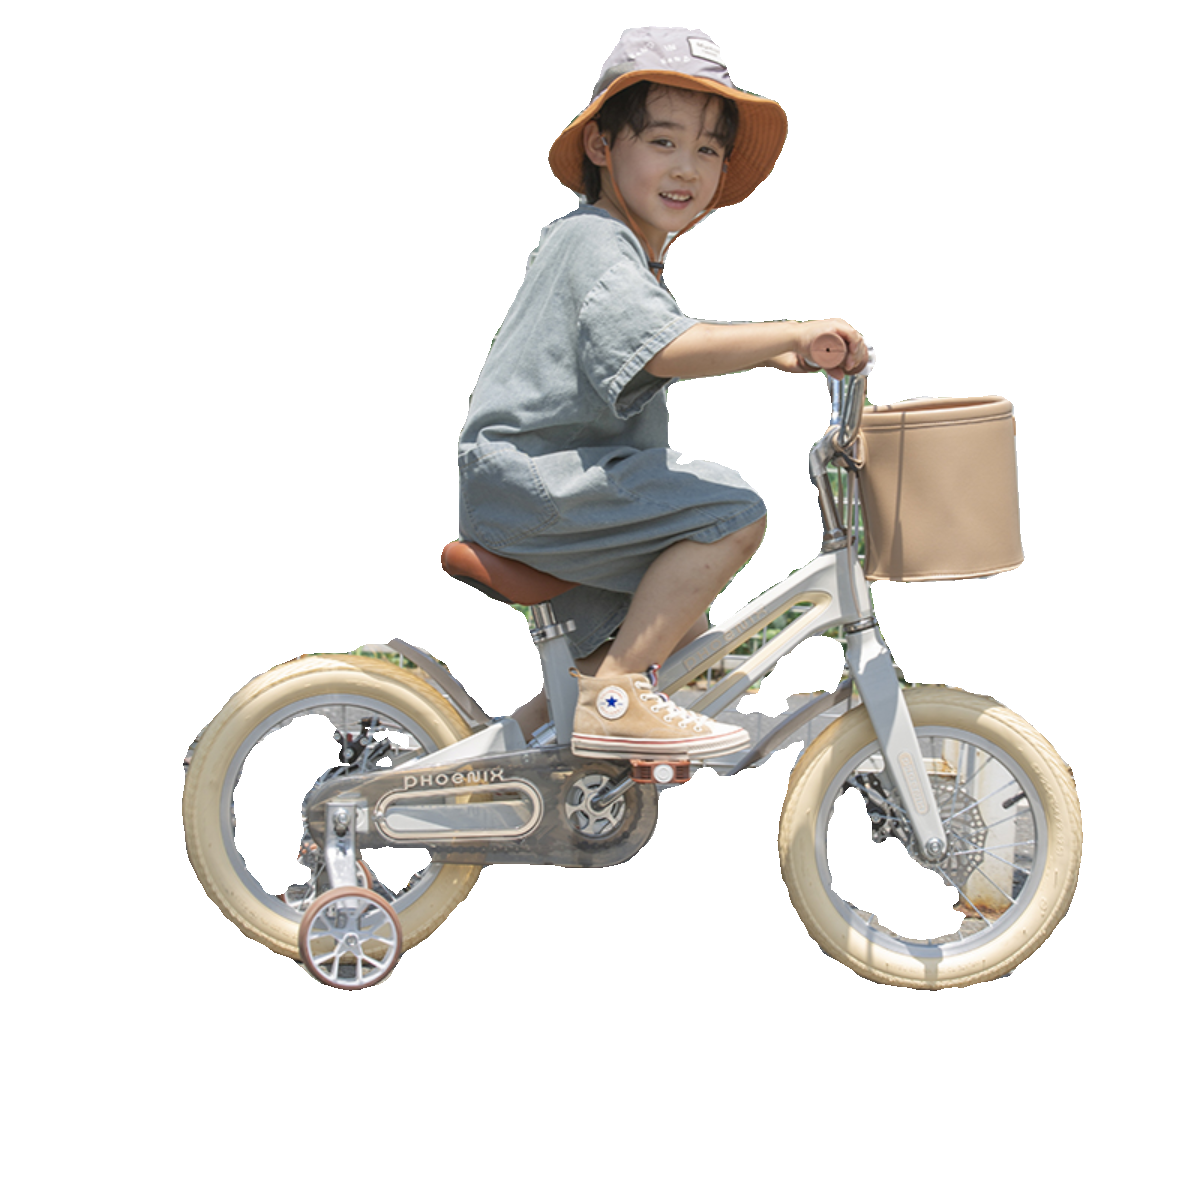 凤凰儿童自行车镁合金男女孩2-3-6-7-10岁宝宝脚踏车小孩单车童车